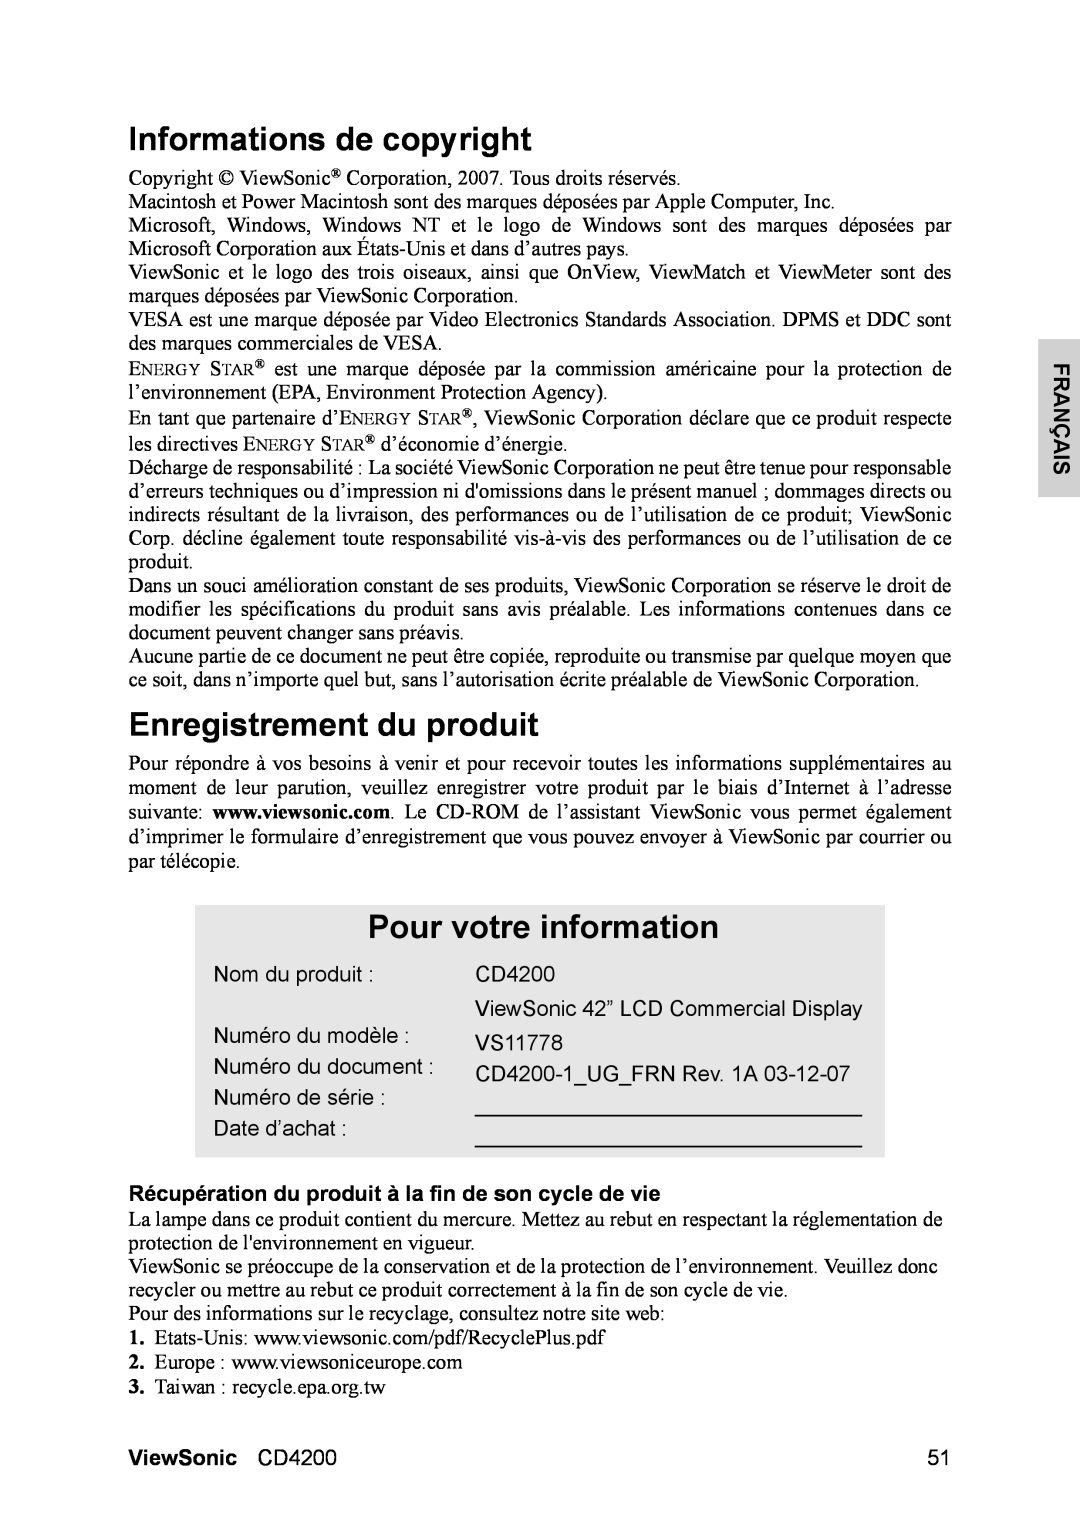 ViewSonic Informations de copyright, Enregistrement du produit, Pour votre information, Français, ViewSonic CD4200 